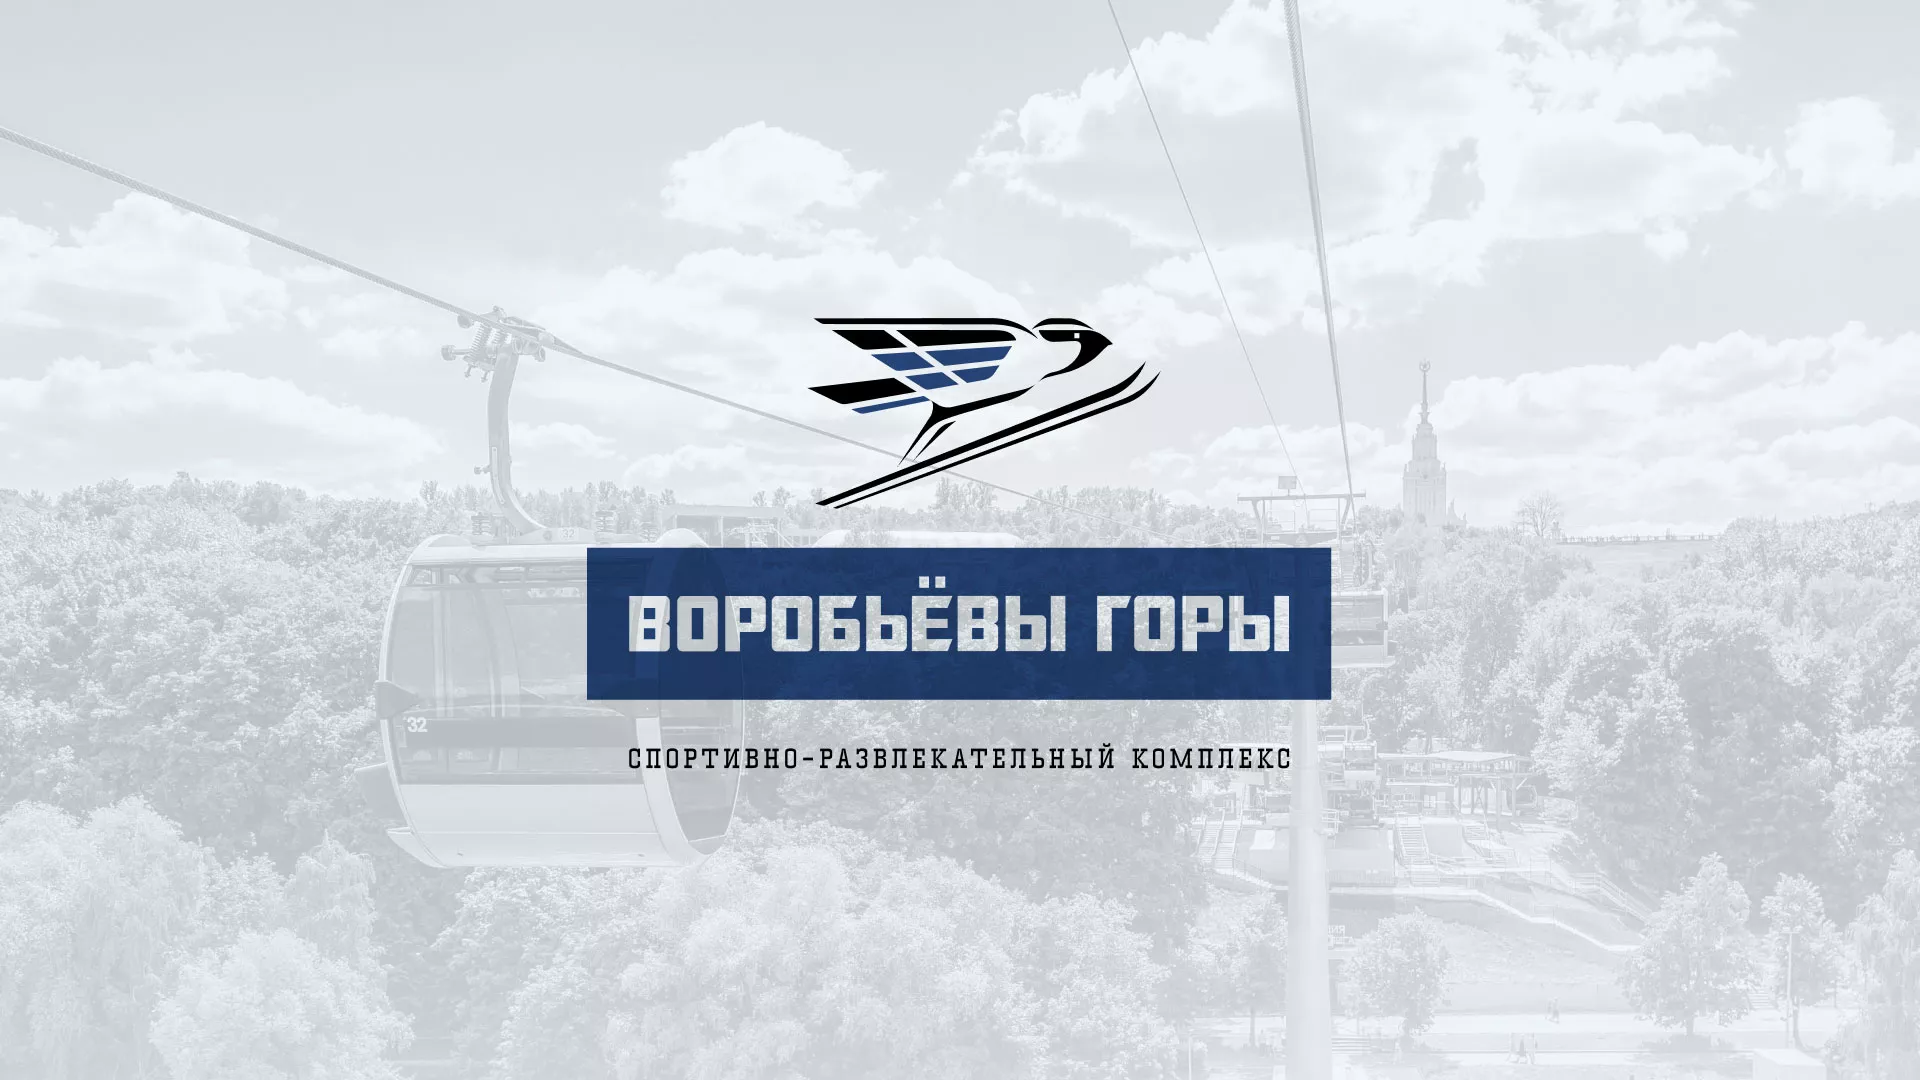 Разработка сайта в Приморско-Ахтарске для спортивно-развлекательного комплекса «Воробьёвы горы»